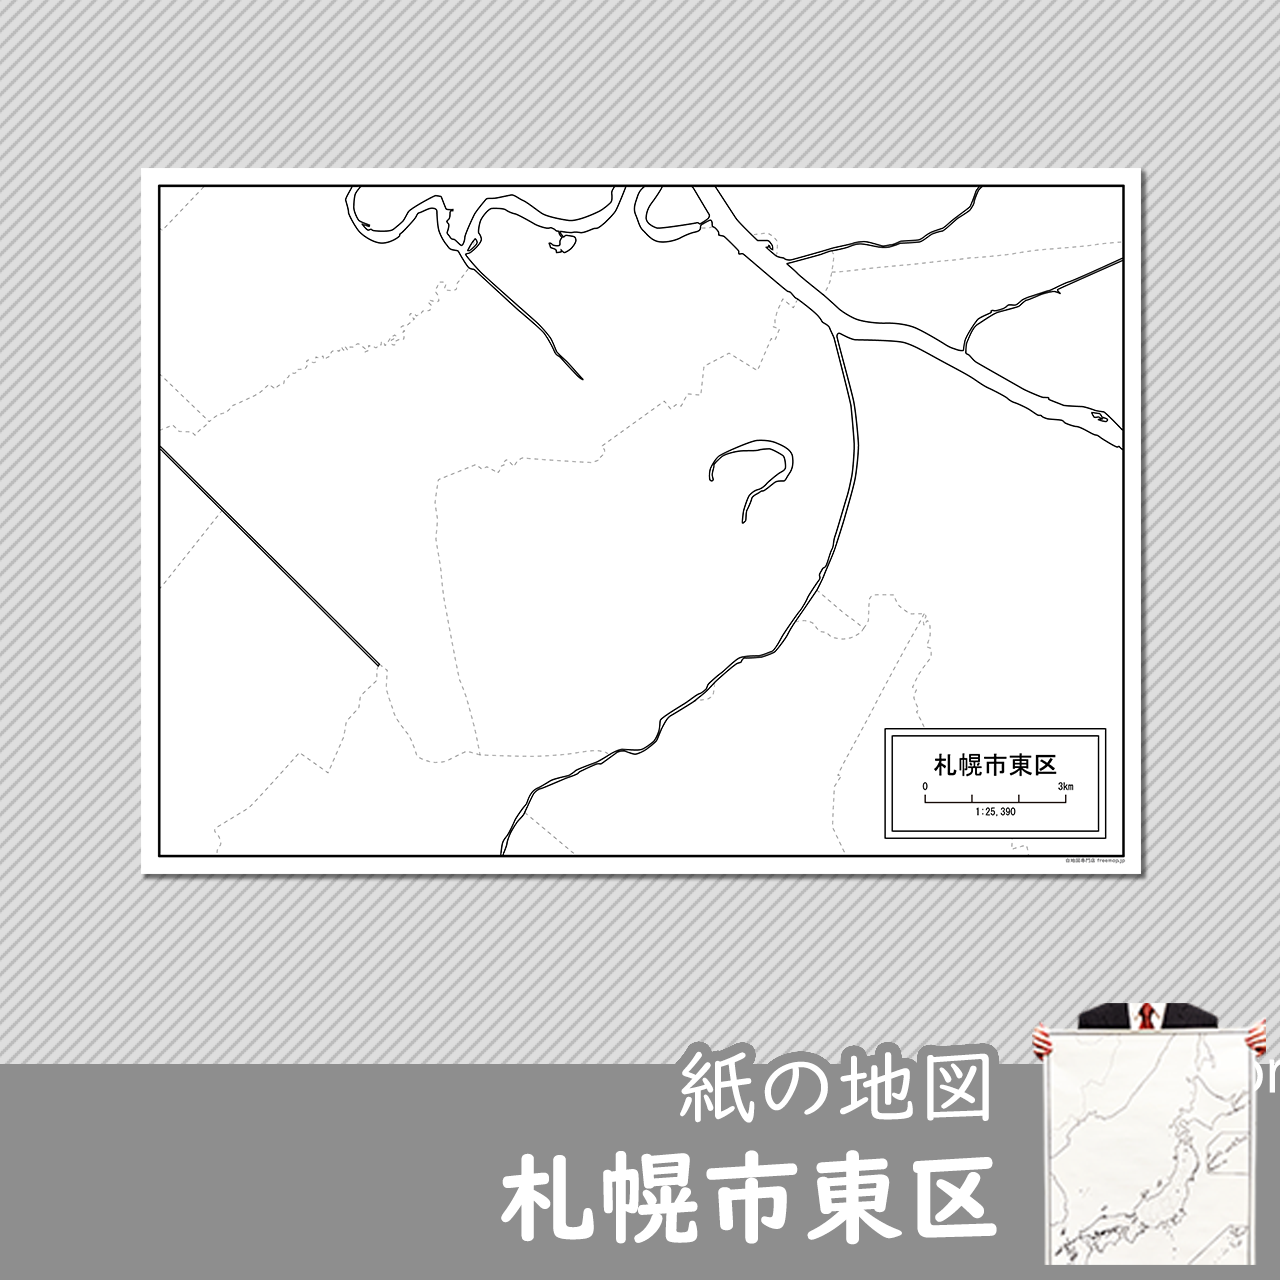 札幌市東区の紙の白地図のサムネイル